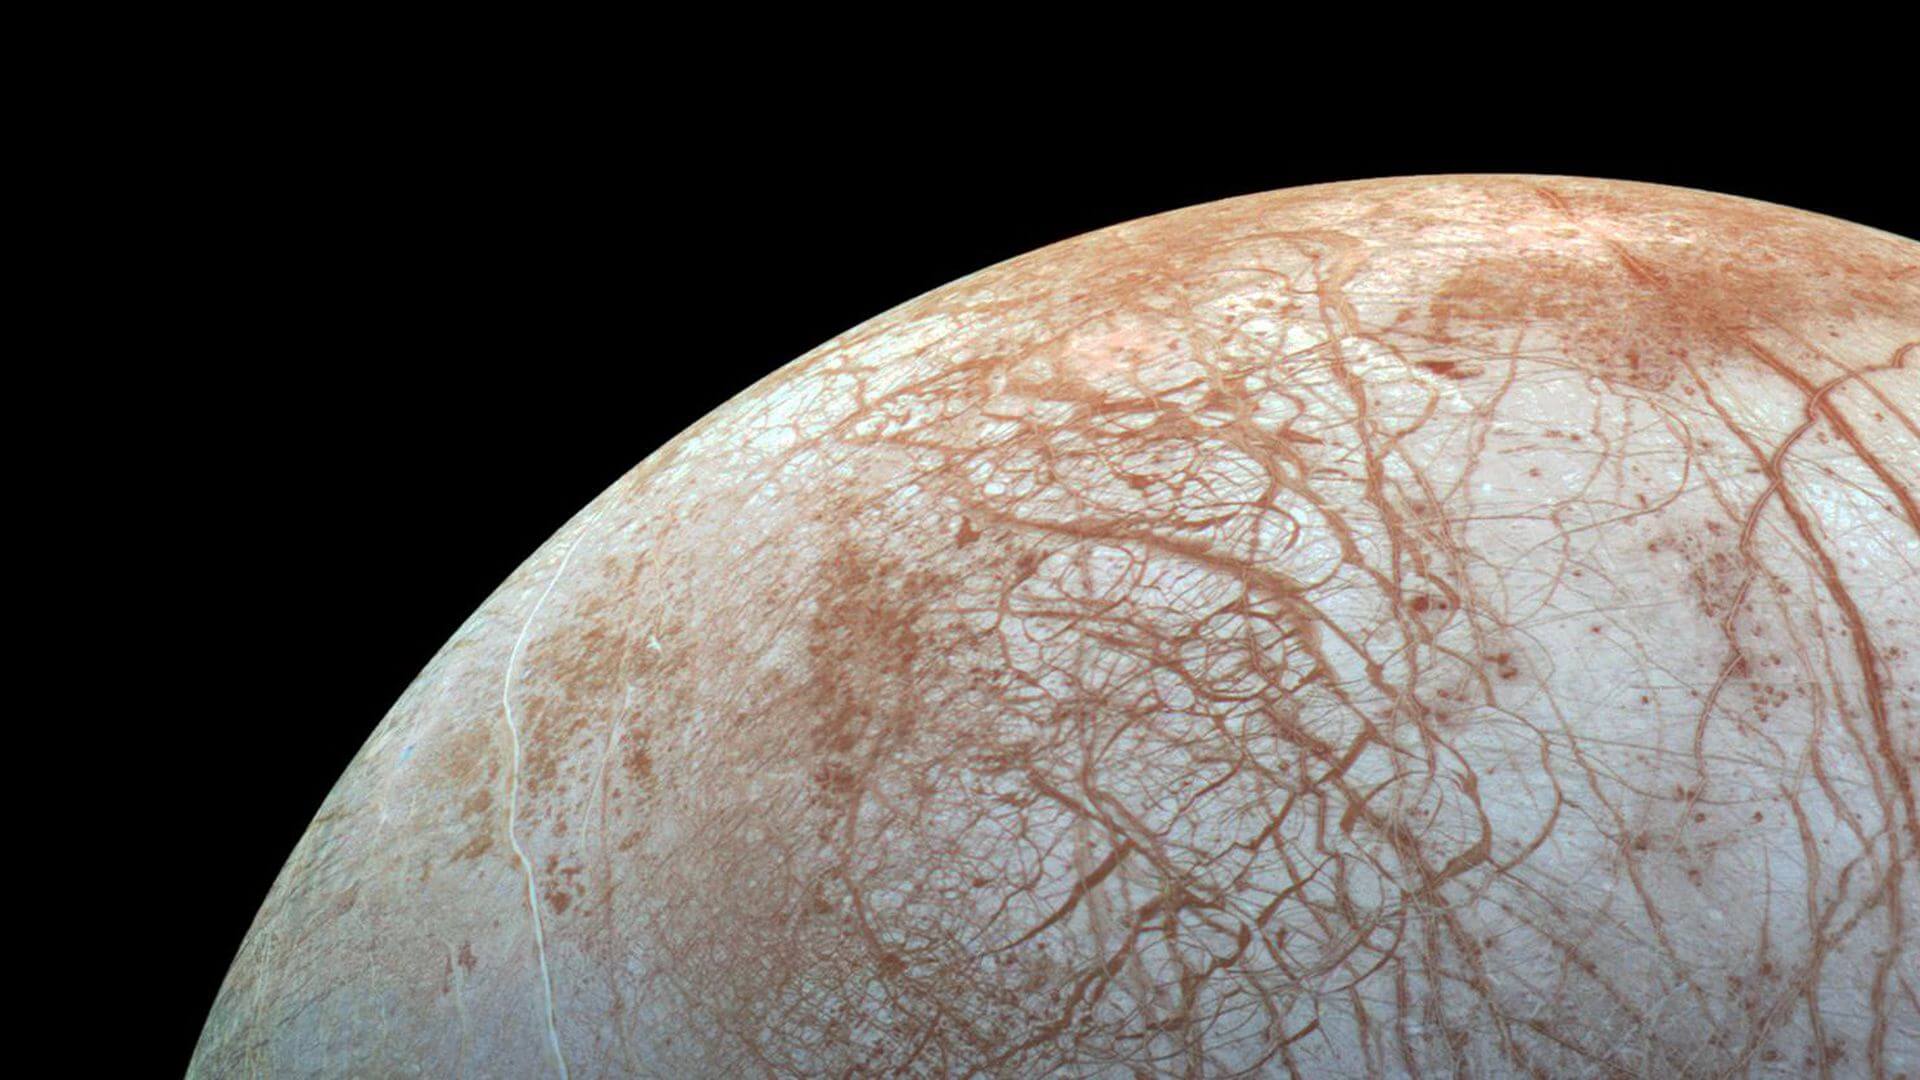 Altında buz Jüpiter'in uydusu yaşamak, yüksek yaşam formları